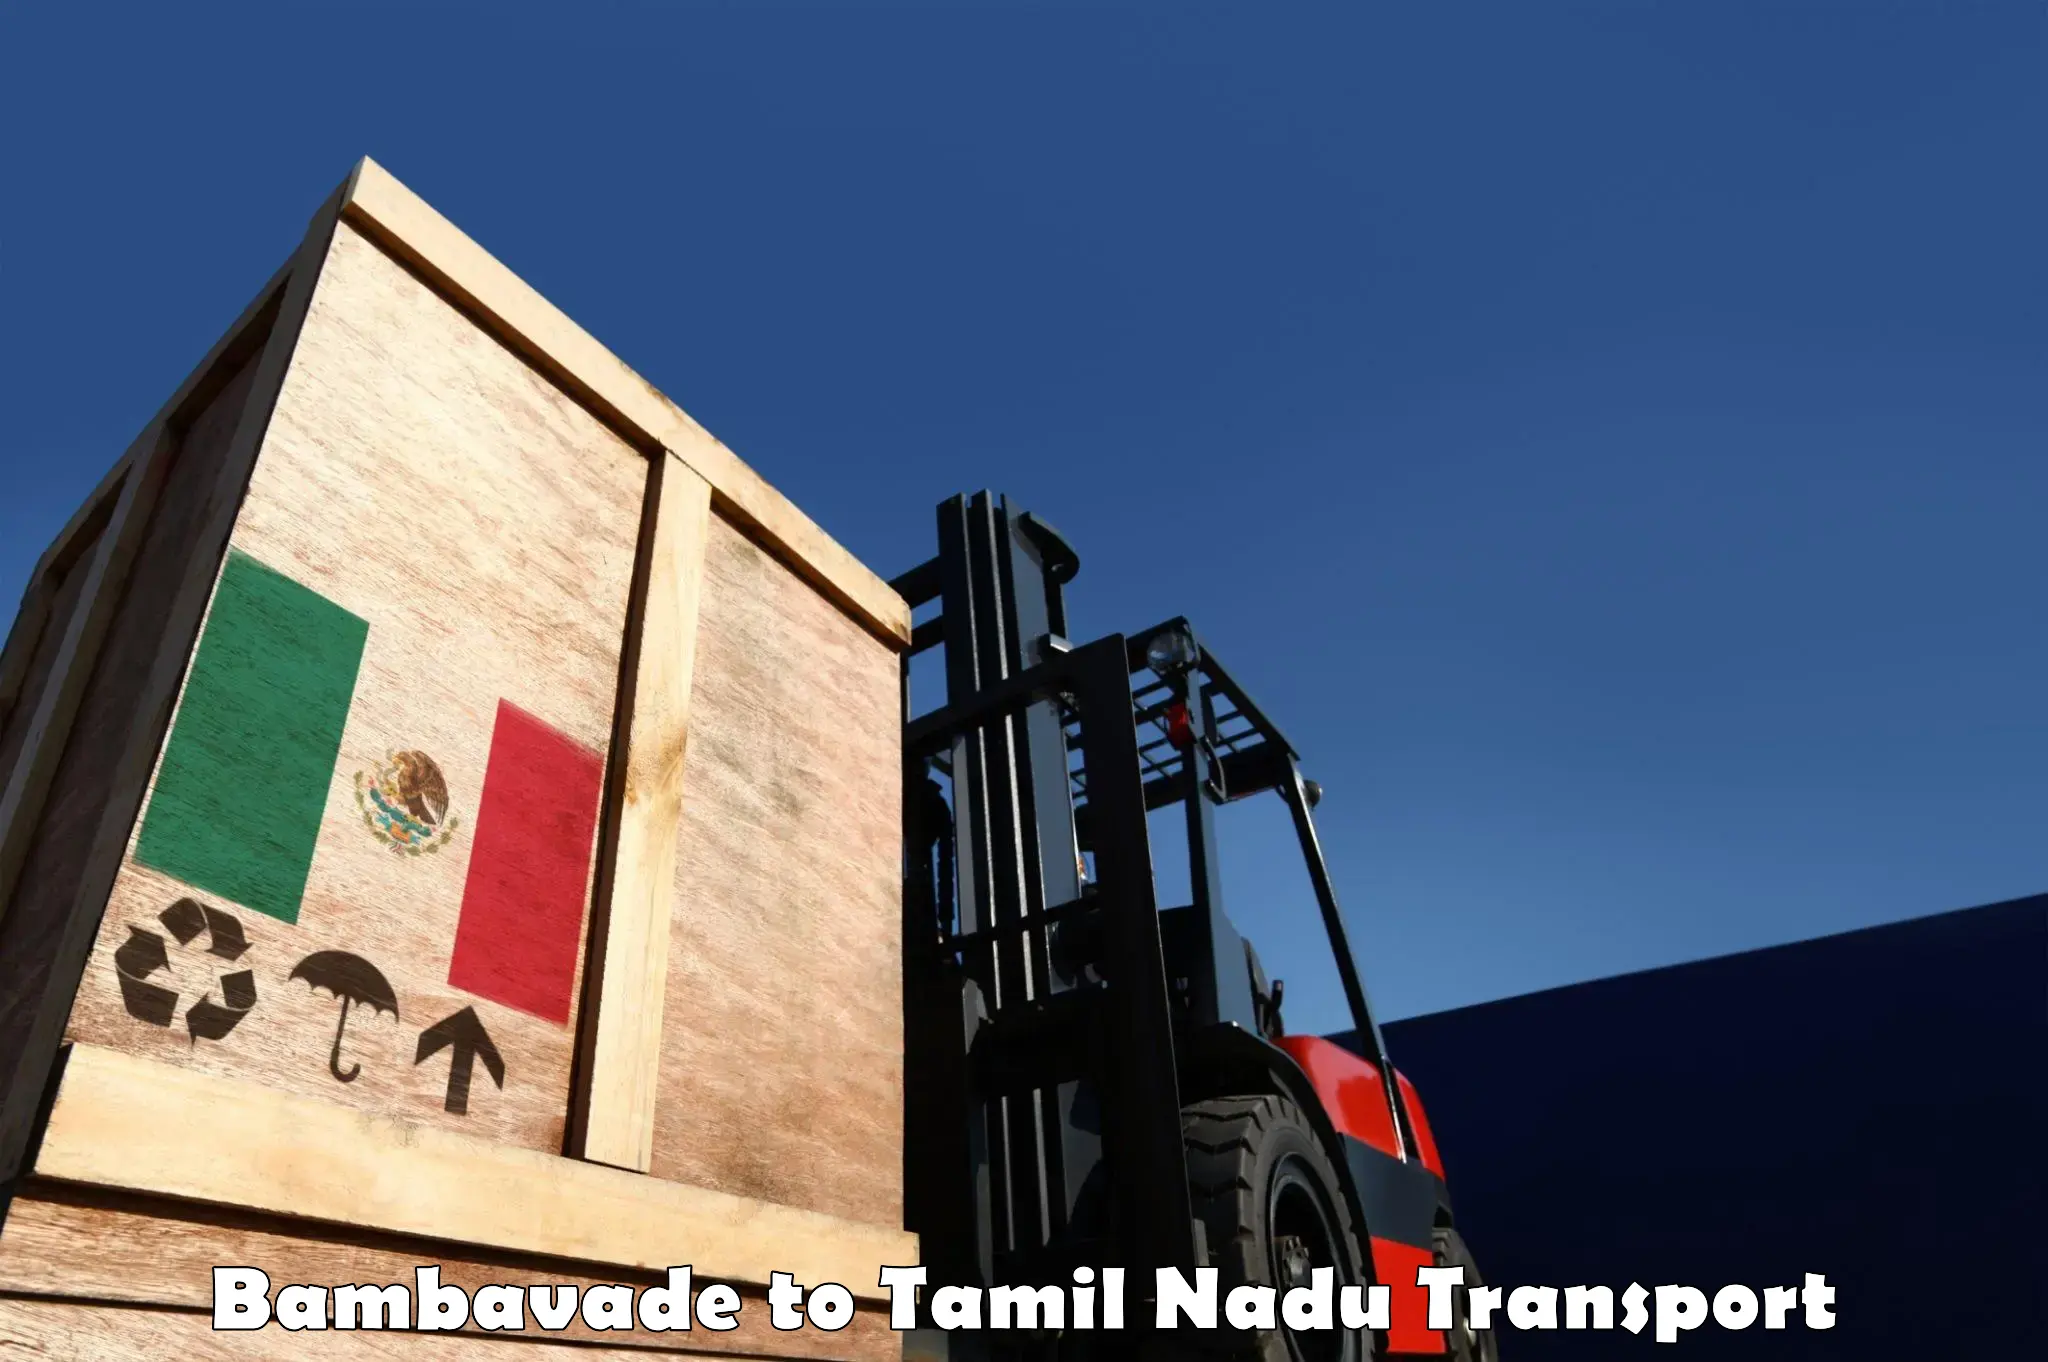 Nearest transport service Bambavade to Thuckalay